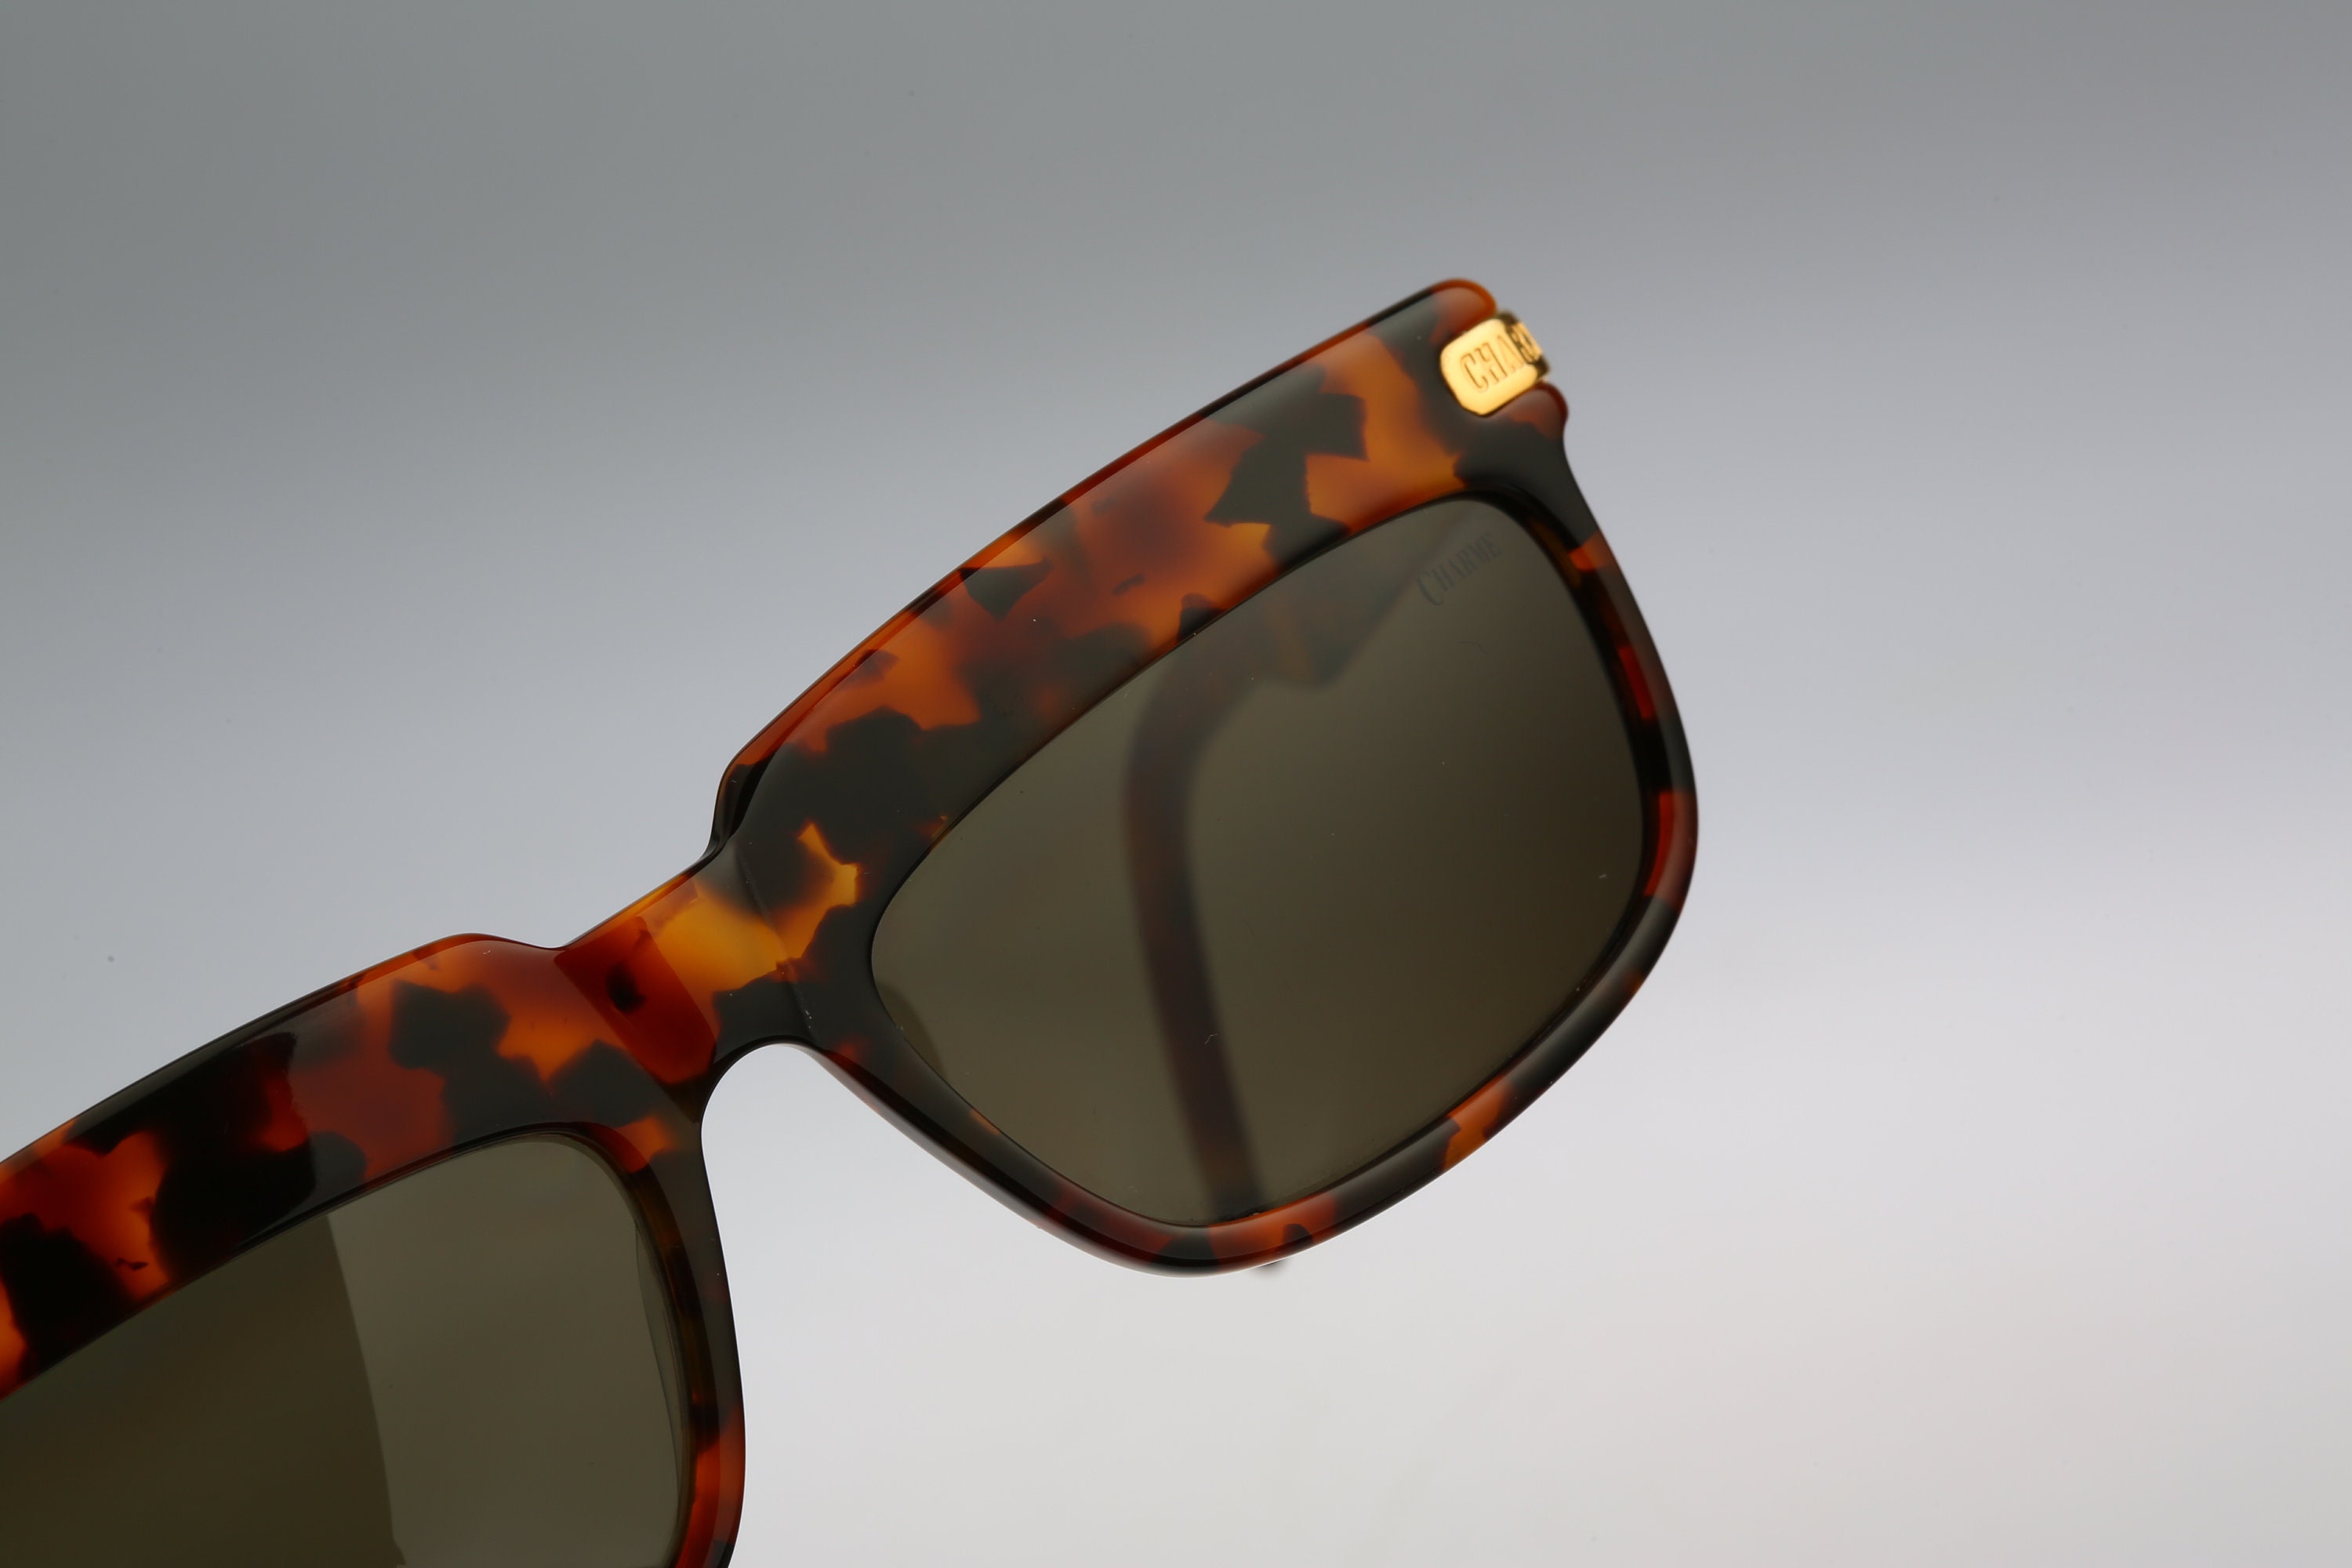 Hula Waimea Sunglasses - Tortoise/Brown on Garmentory